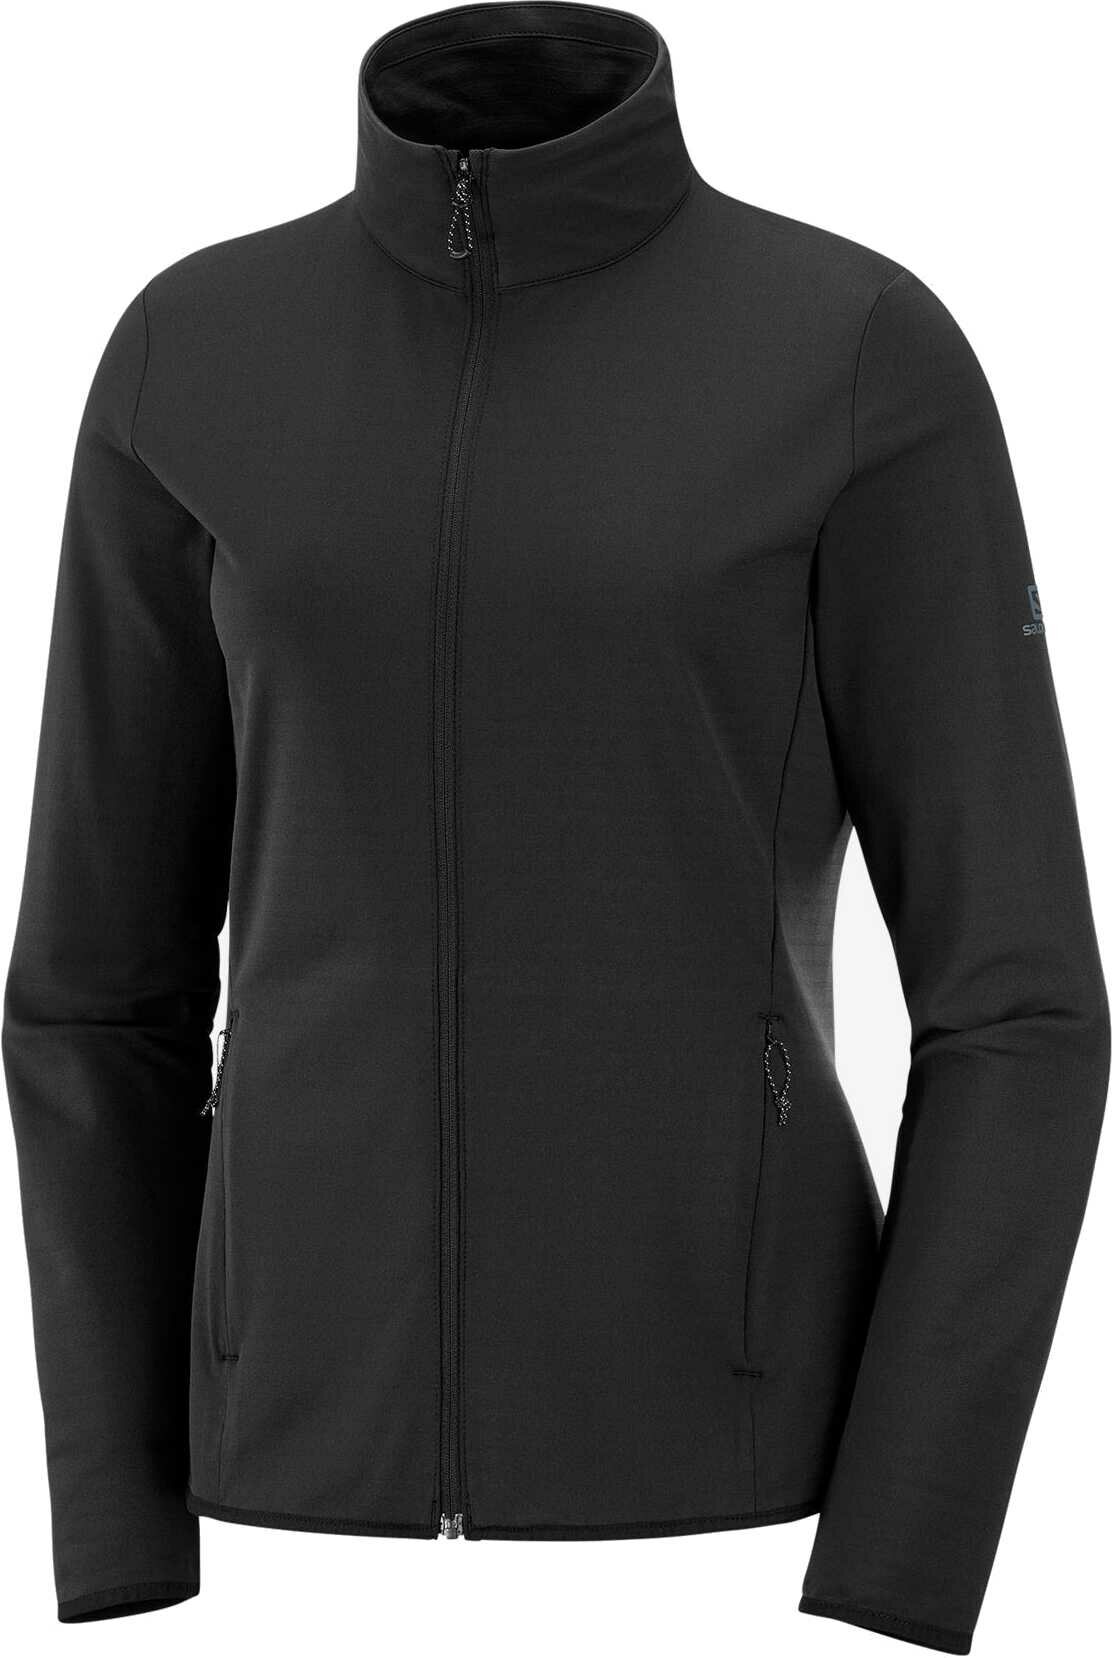 Salomon Essential Lightwarm Full Zip Midlayer Jacket Womens | Women's ...